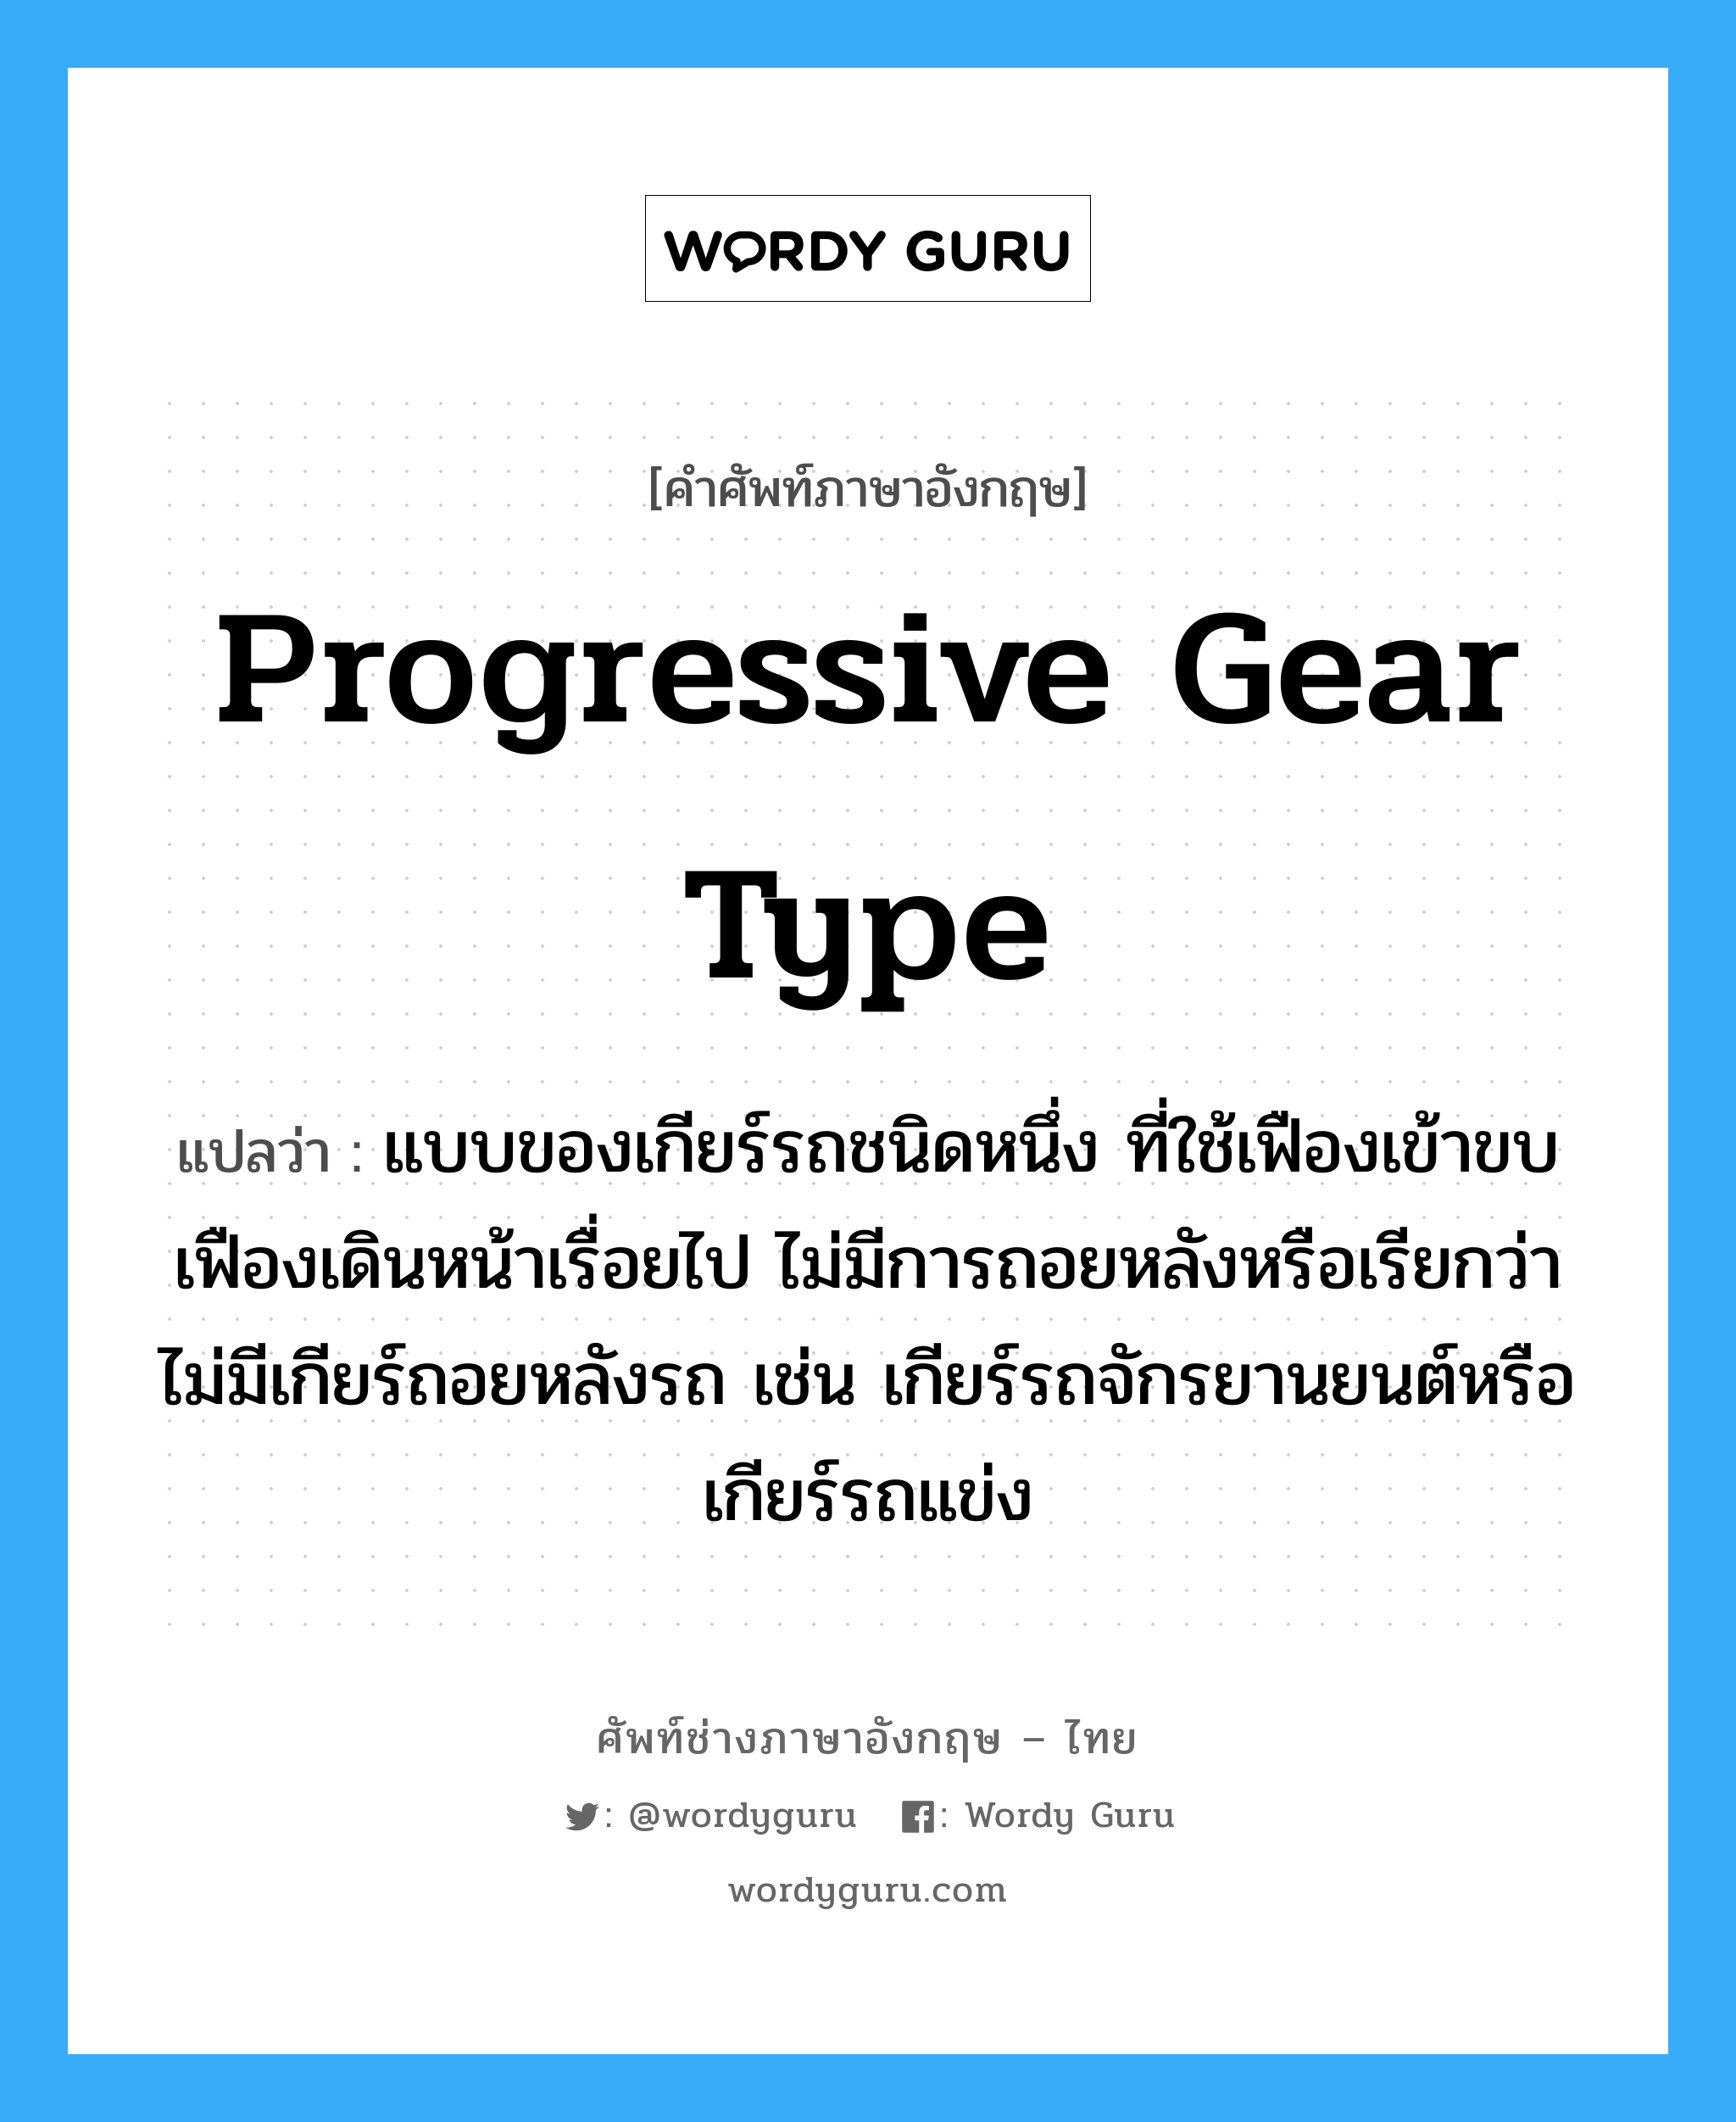 progressive gear type แปลว่า?, คำศัพท์ช่างภาษาอังกฤษ - ไทย progressive gear type คำศัพท์ภาษาอังกฤษ progressive gear type แปลว่า แบบของเกียร์รถชนิดหนึ่ง ที่ใช้เฟืองเข้าขบเฟืองเดินหน้าเรื่อยไป ไม่มีการถอยหลังหรือเรียกว่า ไม่มีเกียร์ถอยหลังรถ เช่น เกียร์รถจักรยานยนต์หรือเกียร์รถแข่ง